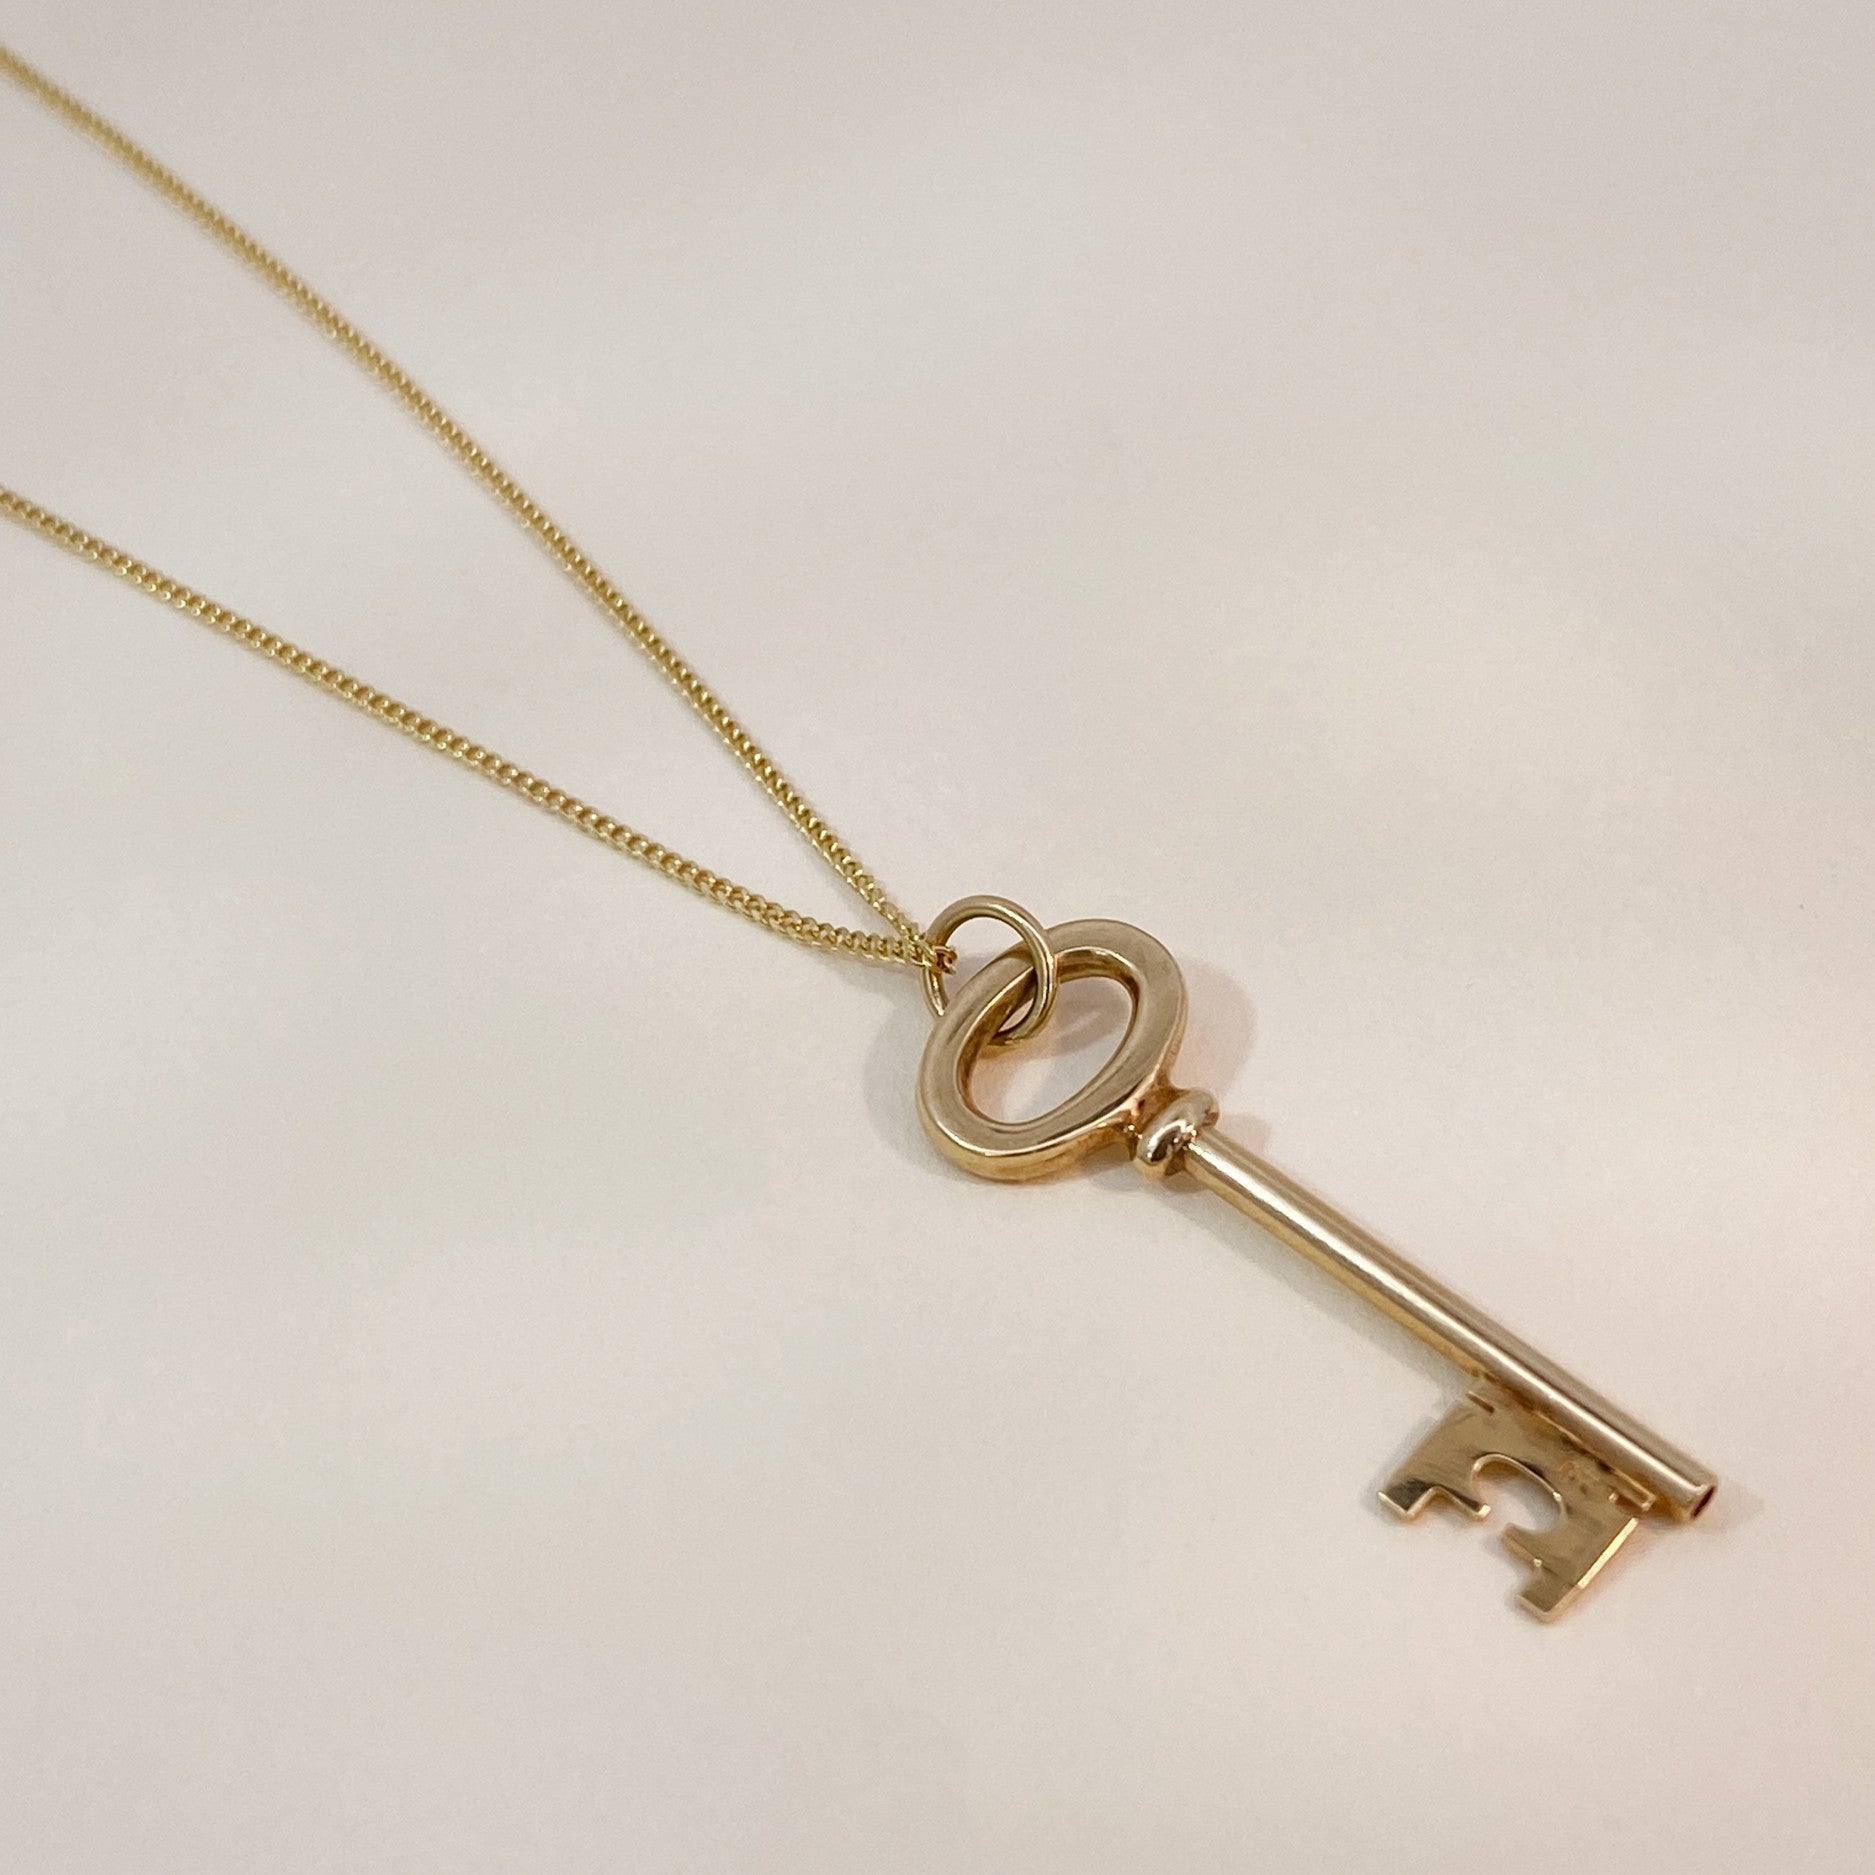 Vintage large key pendant